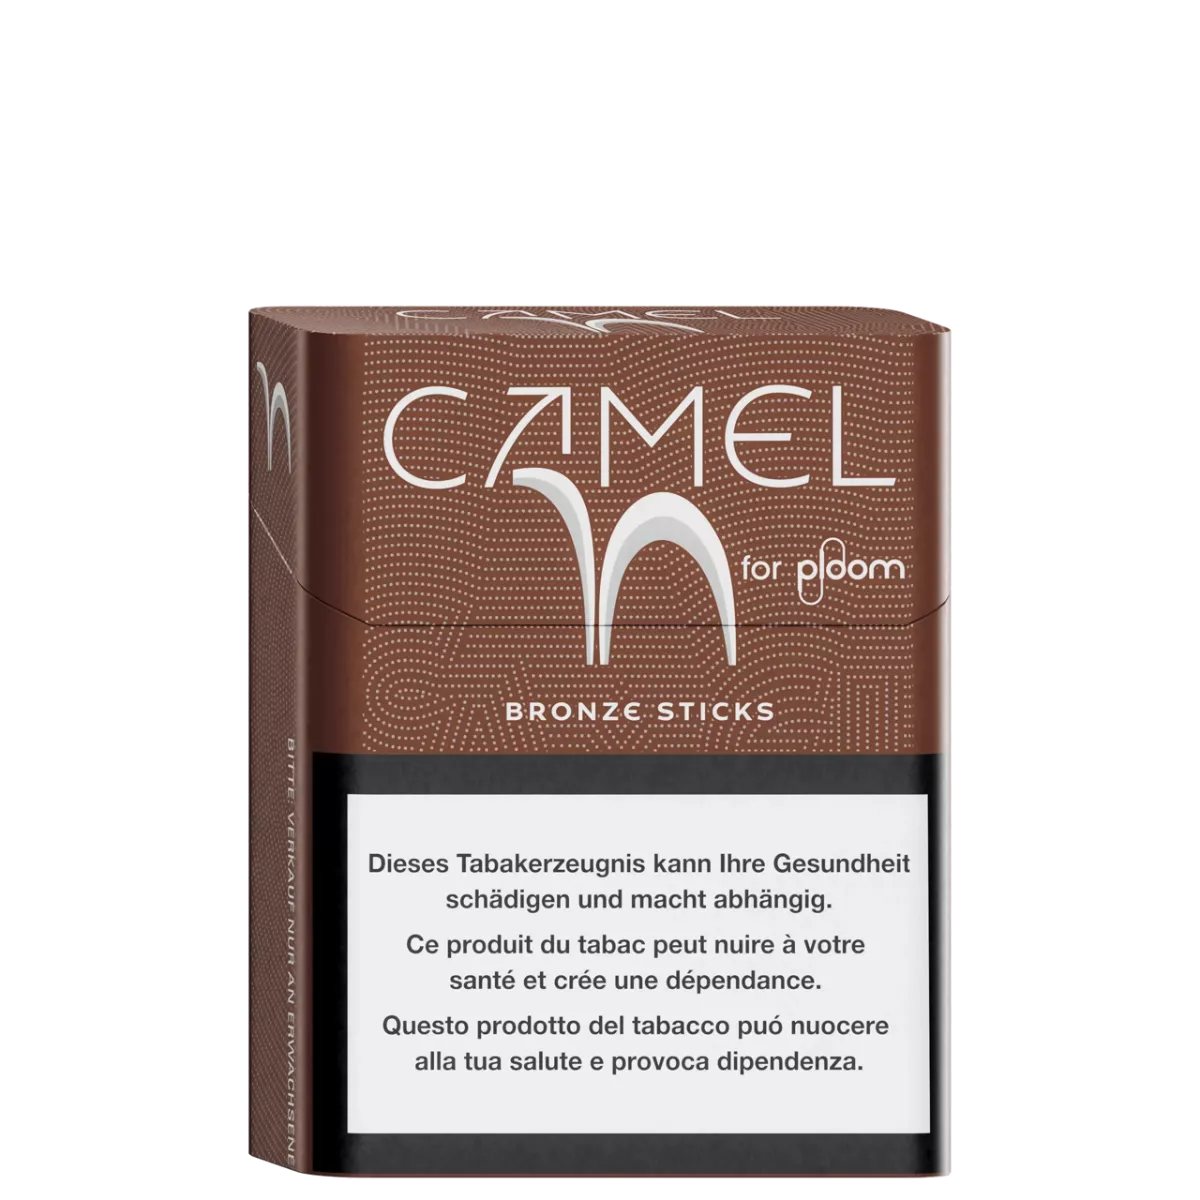 Camel Bronze sticks pour ploom X advanced - ccoté gauche
